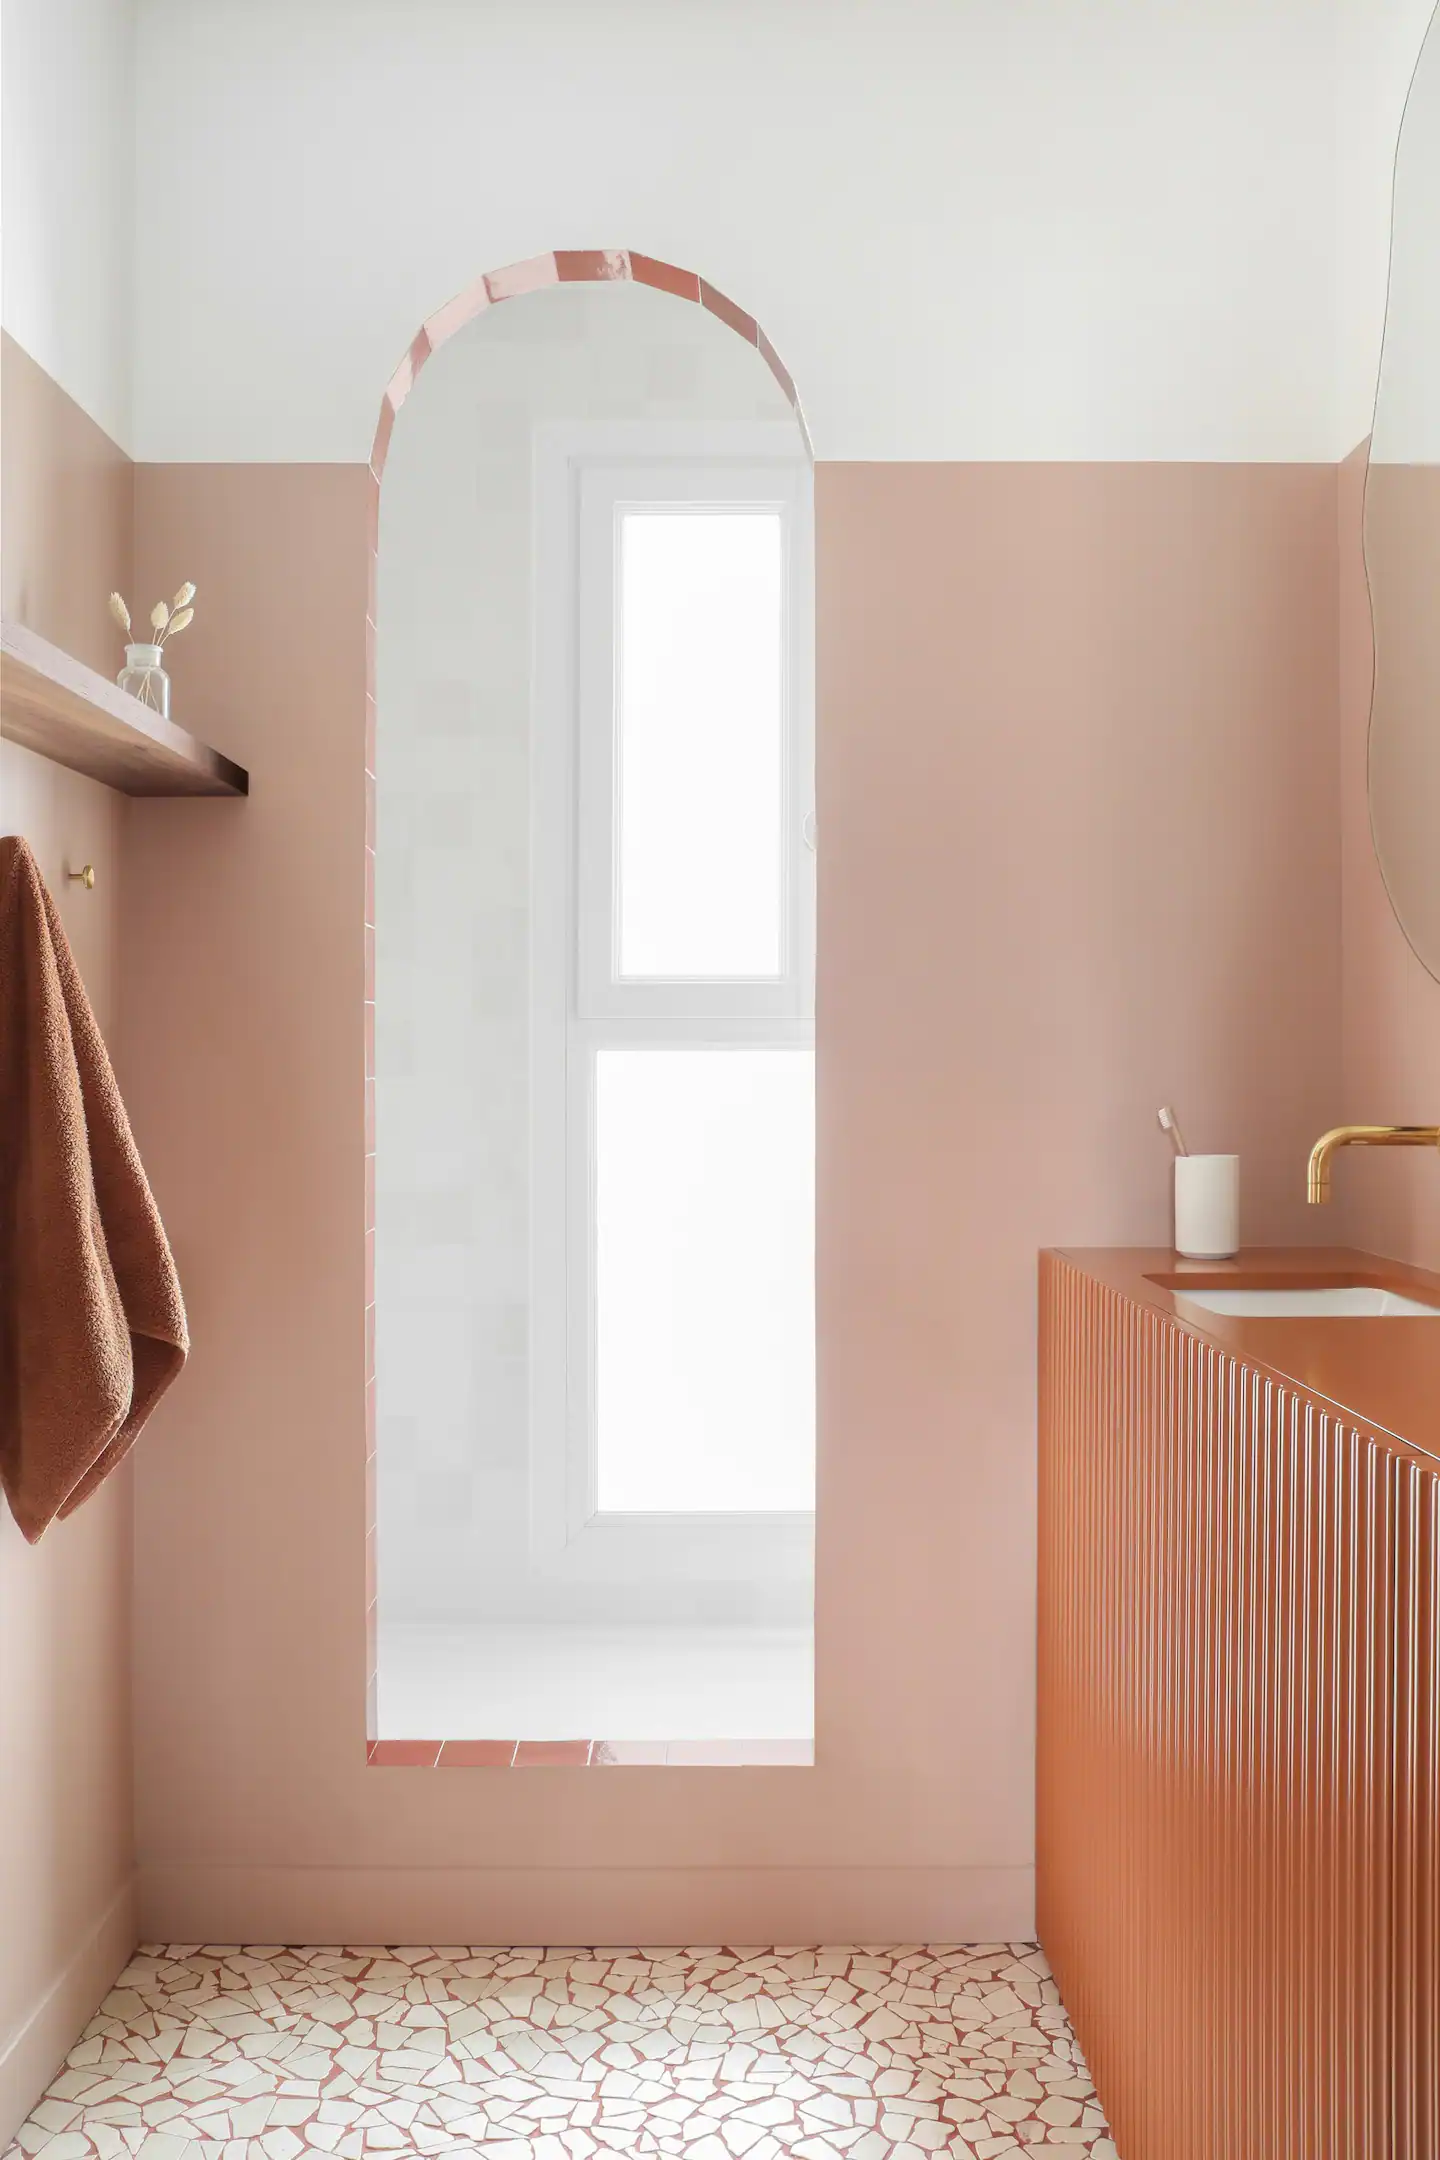 salle de bain terracotta appartement 45m2 Paris décoration design à louer Airbnb par Heju